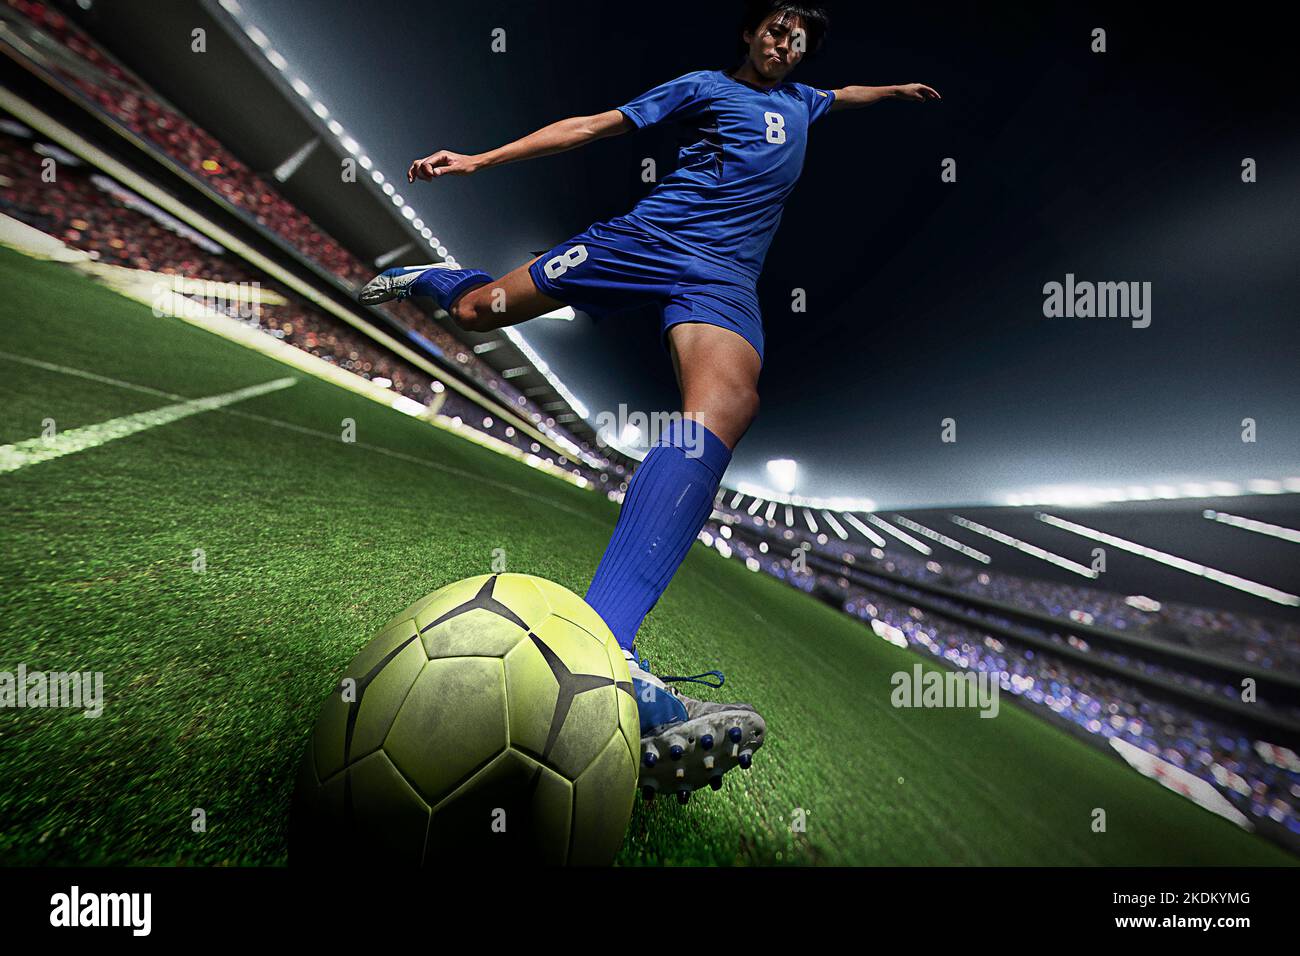 Jugador de fútbol golpeando el balón Foto de stock